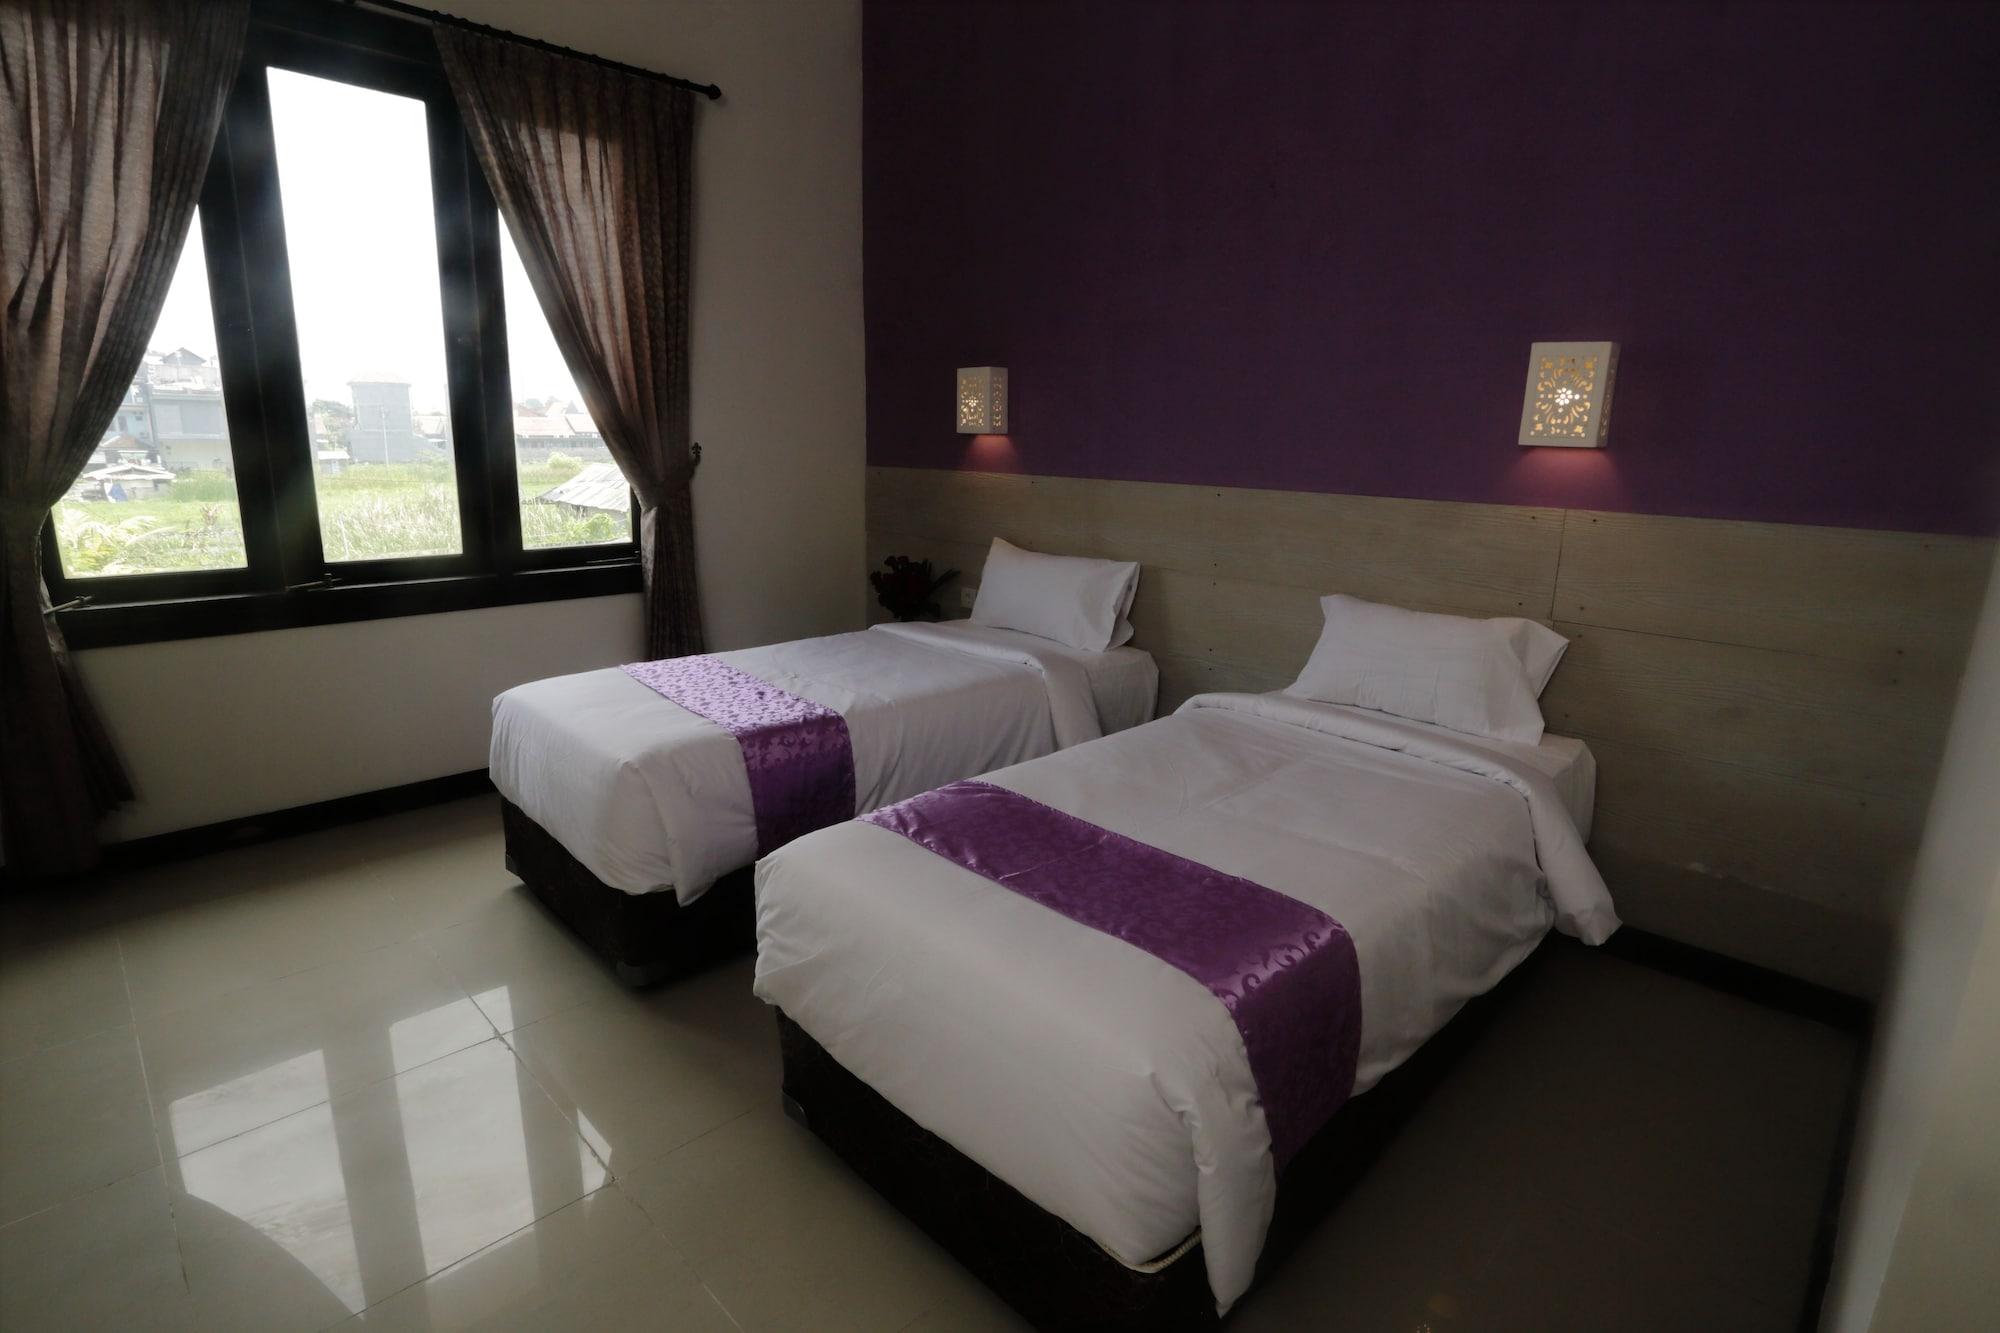 Bali Dream Costel Hotel Denpasar Esterno foto